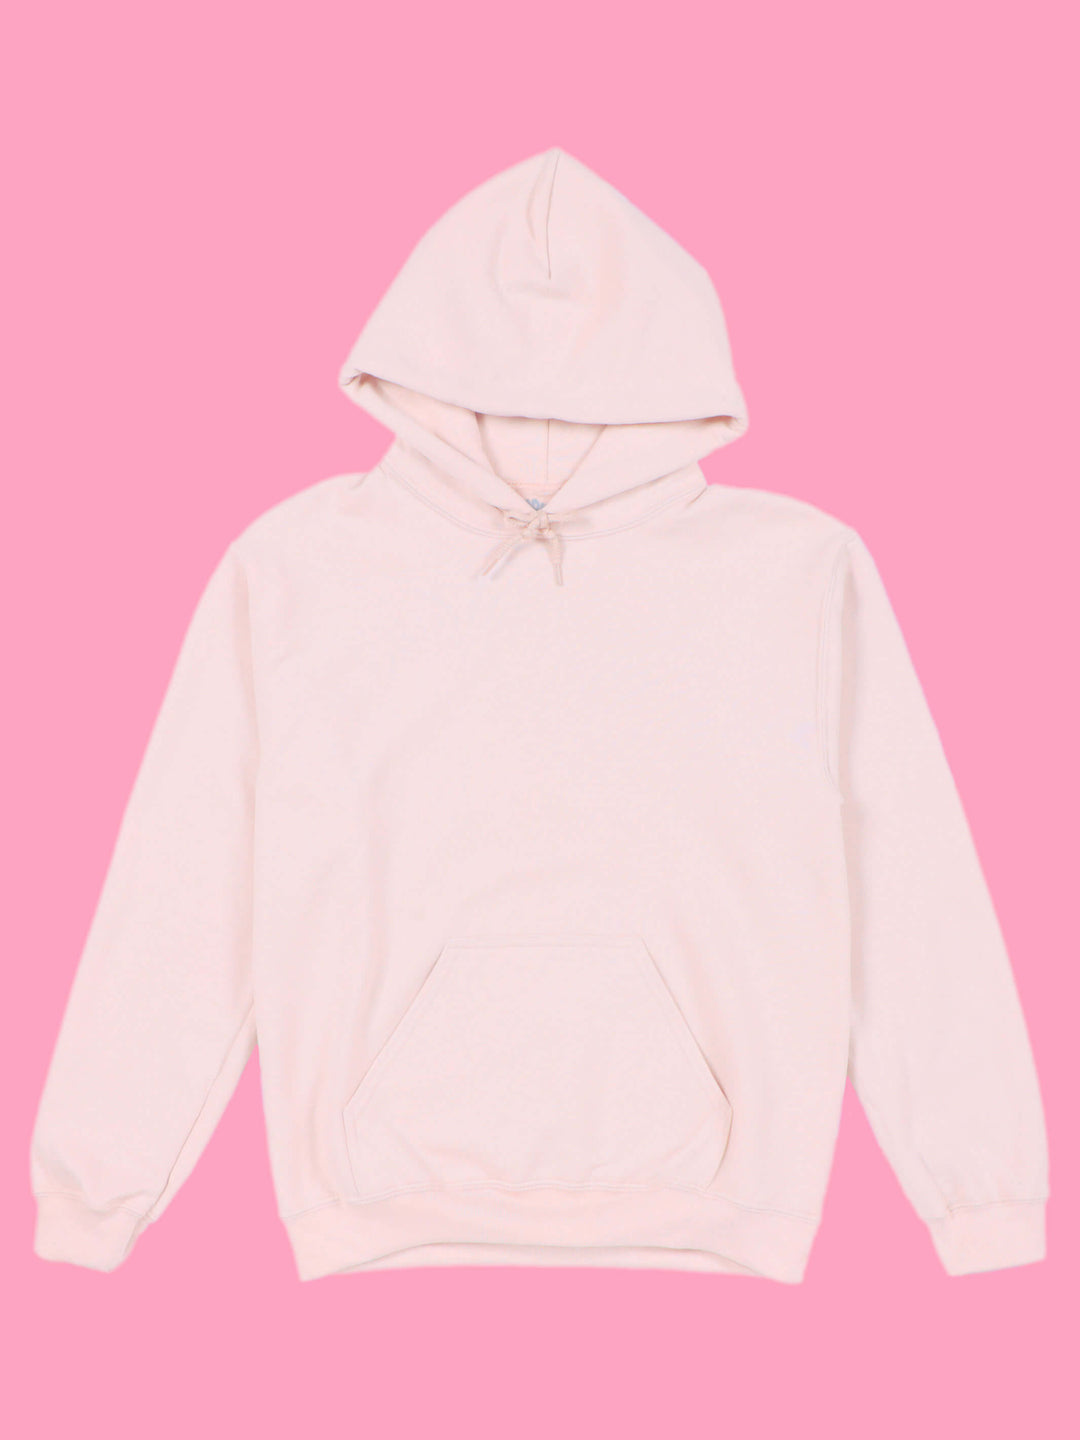 Popkiller custom printed pink hoodie.